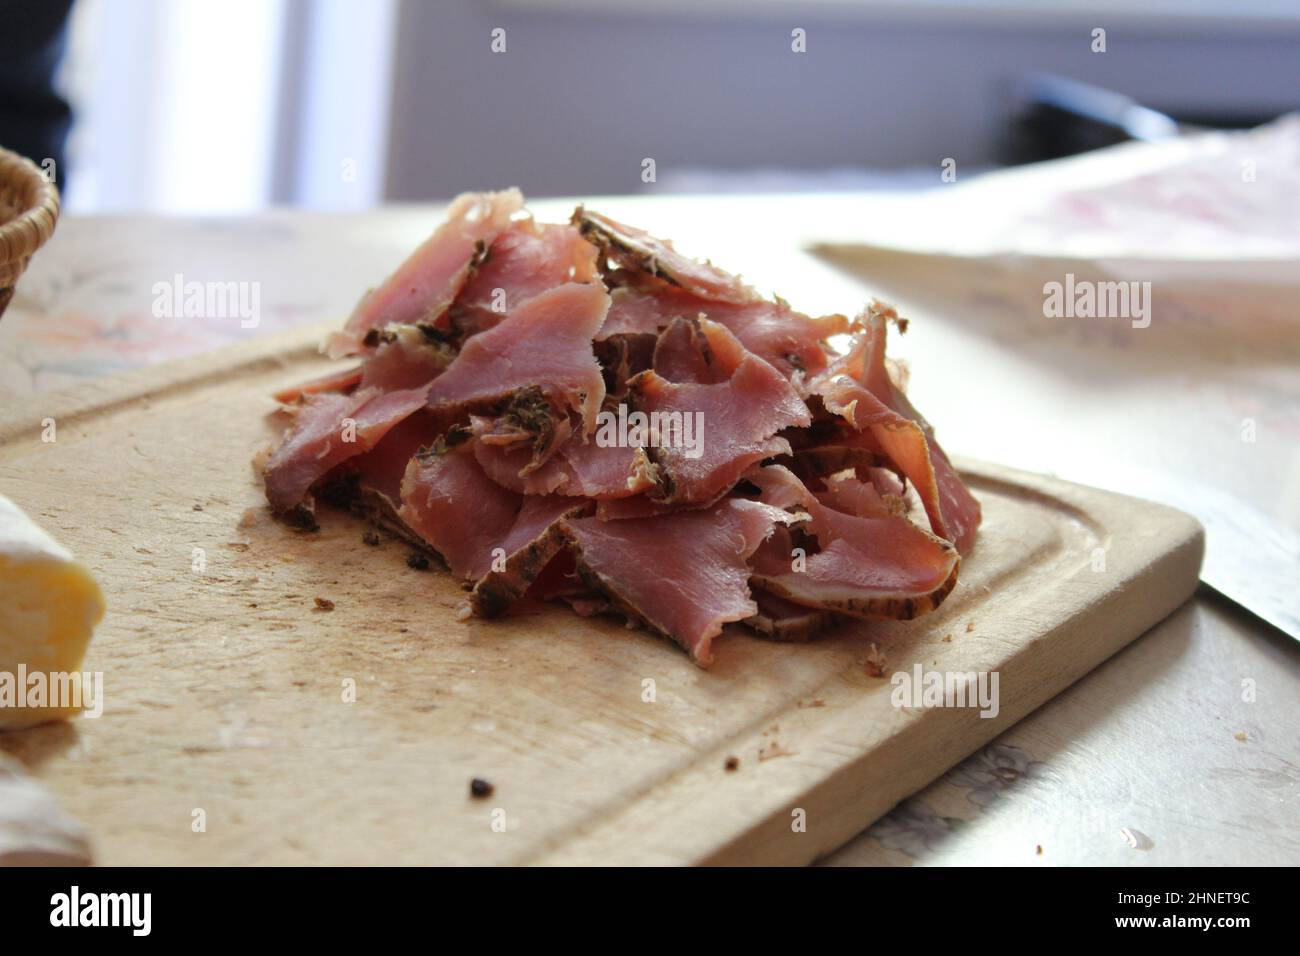 una mensola di legno con carne secca deliziosa e prosciutto da mangiare come tapas con vino in francia nel primo piano d'estate Foto Stock